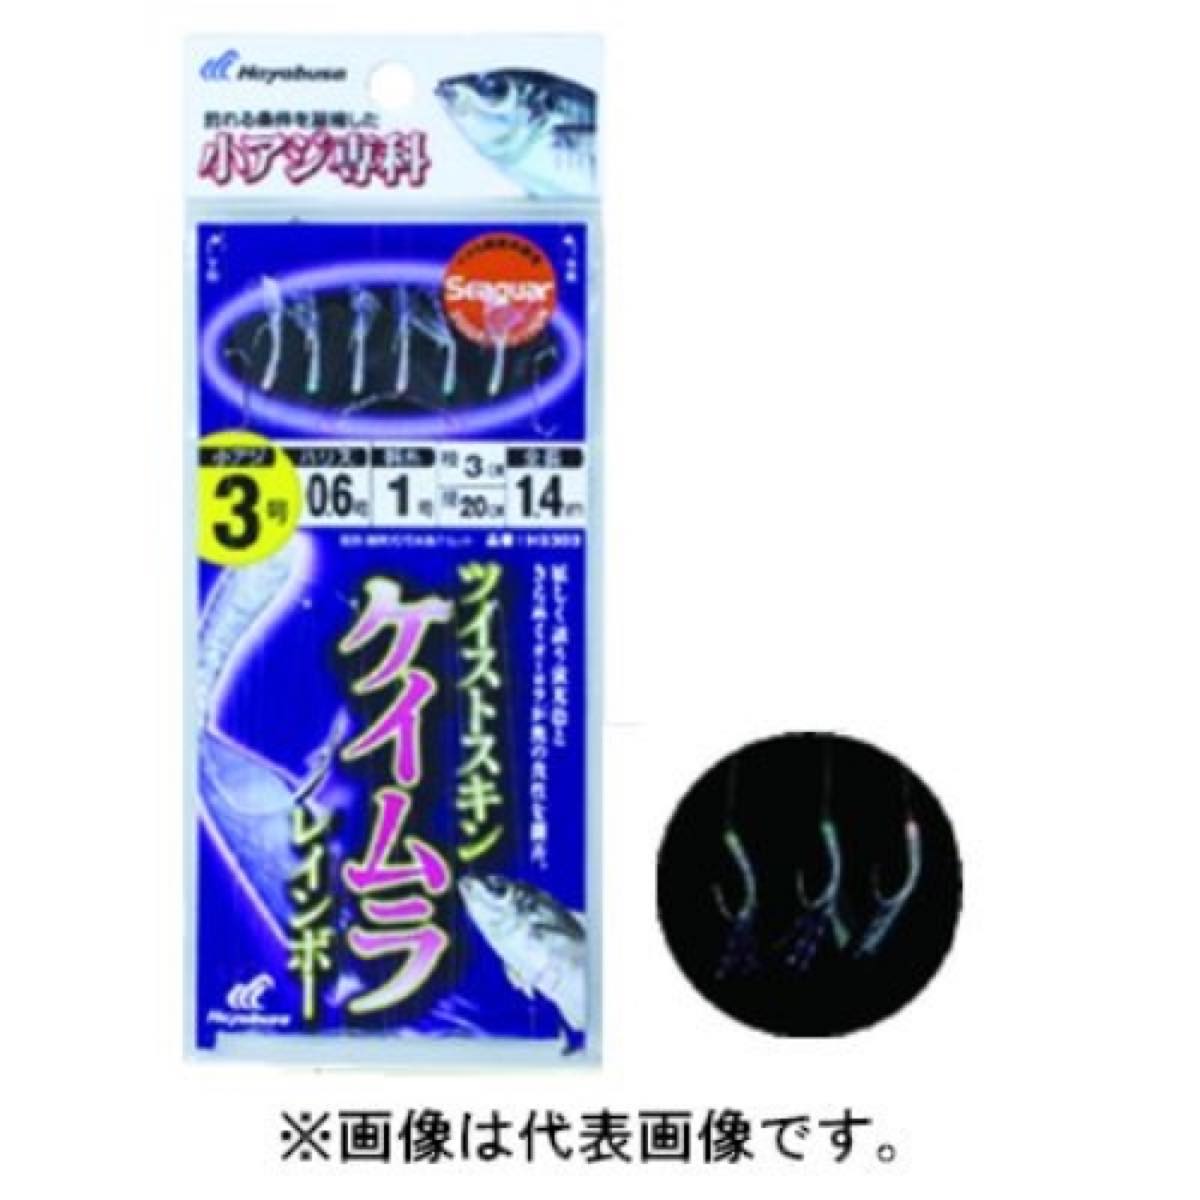 ハヤブサ Hayabusa 小アジ専科 ツイストケイムラレインボー HS303 鈎7号-ハリス1.5号 ネコポス(メール便)対象商品